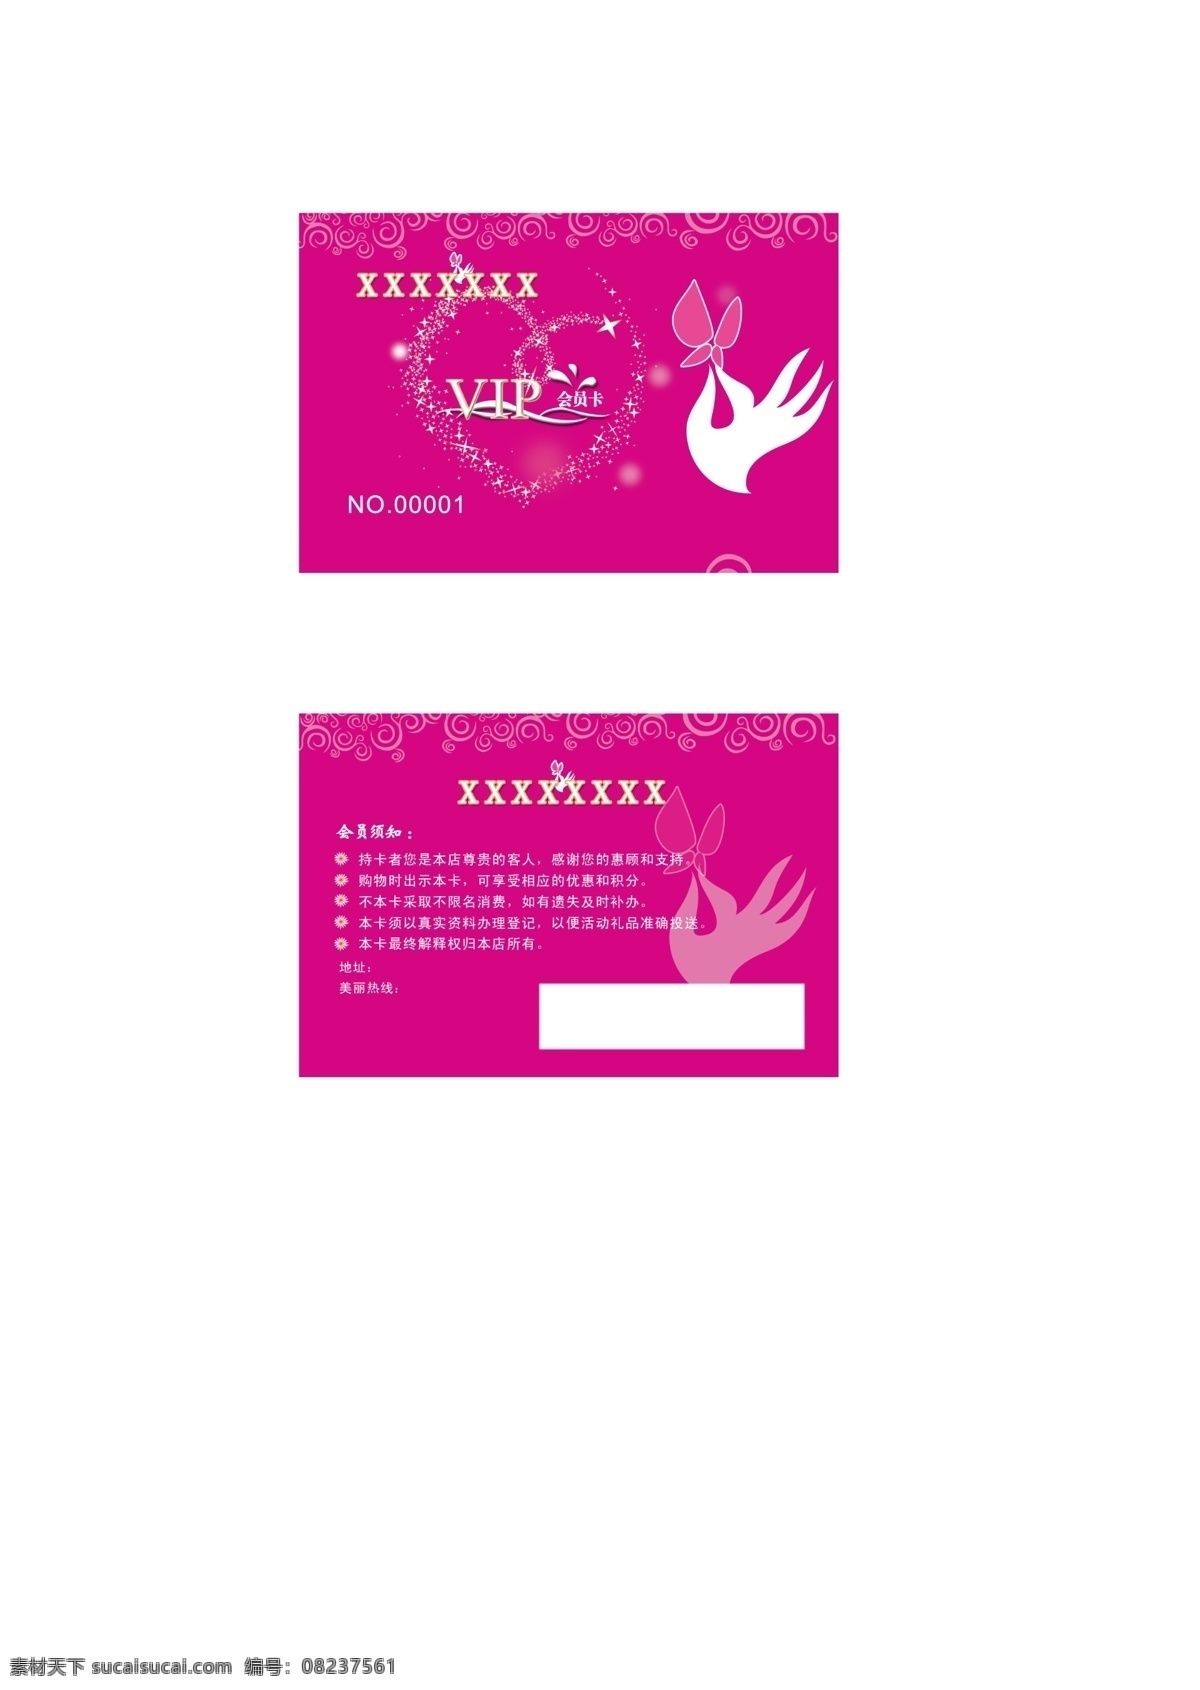 磁条卡 粉红色 广告设计模板 蝴蝶 化妆品会员卡 化妆品名片 会员卡 名片 化妆品 模板下载 活泼的 名片类 名片卡片 源文件 名片卡 广告设计名片